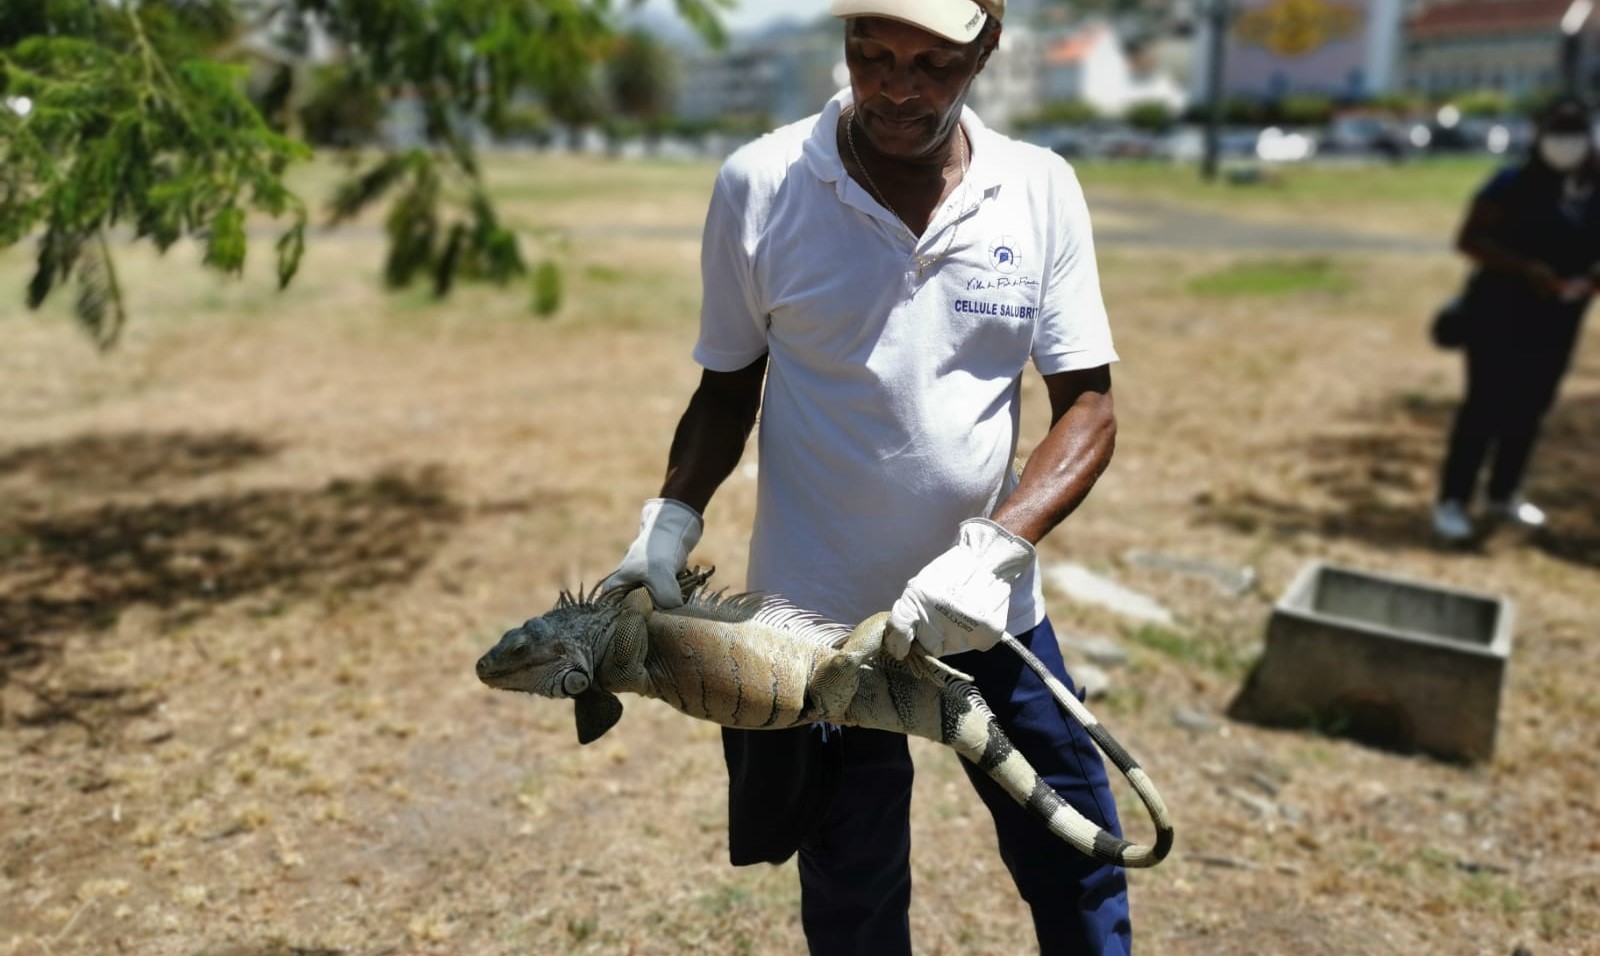     La ville de Fort-de-France capture des iguanes communs pour lutter contre leur prolifération

